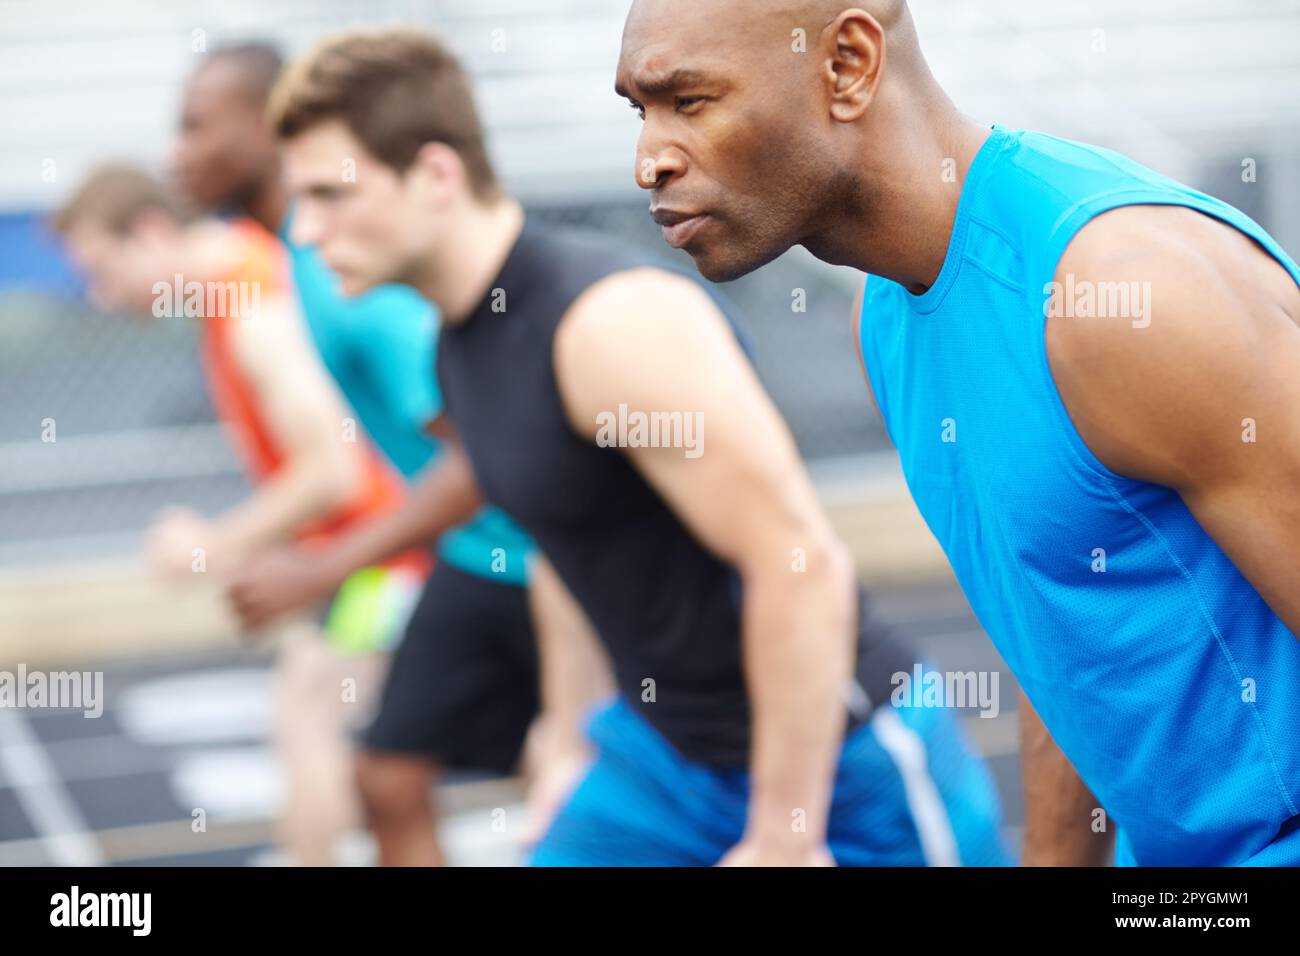 Bereit, fertig... Nahaufnahme eines männlichen Läufers in einer Reihe von anderen Athleten, die im Hintergrund verschwommen sind. Stockfoto